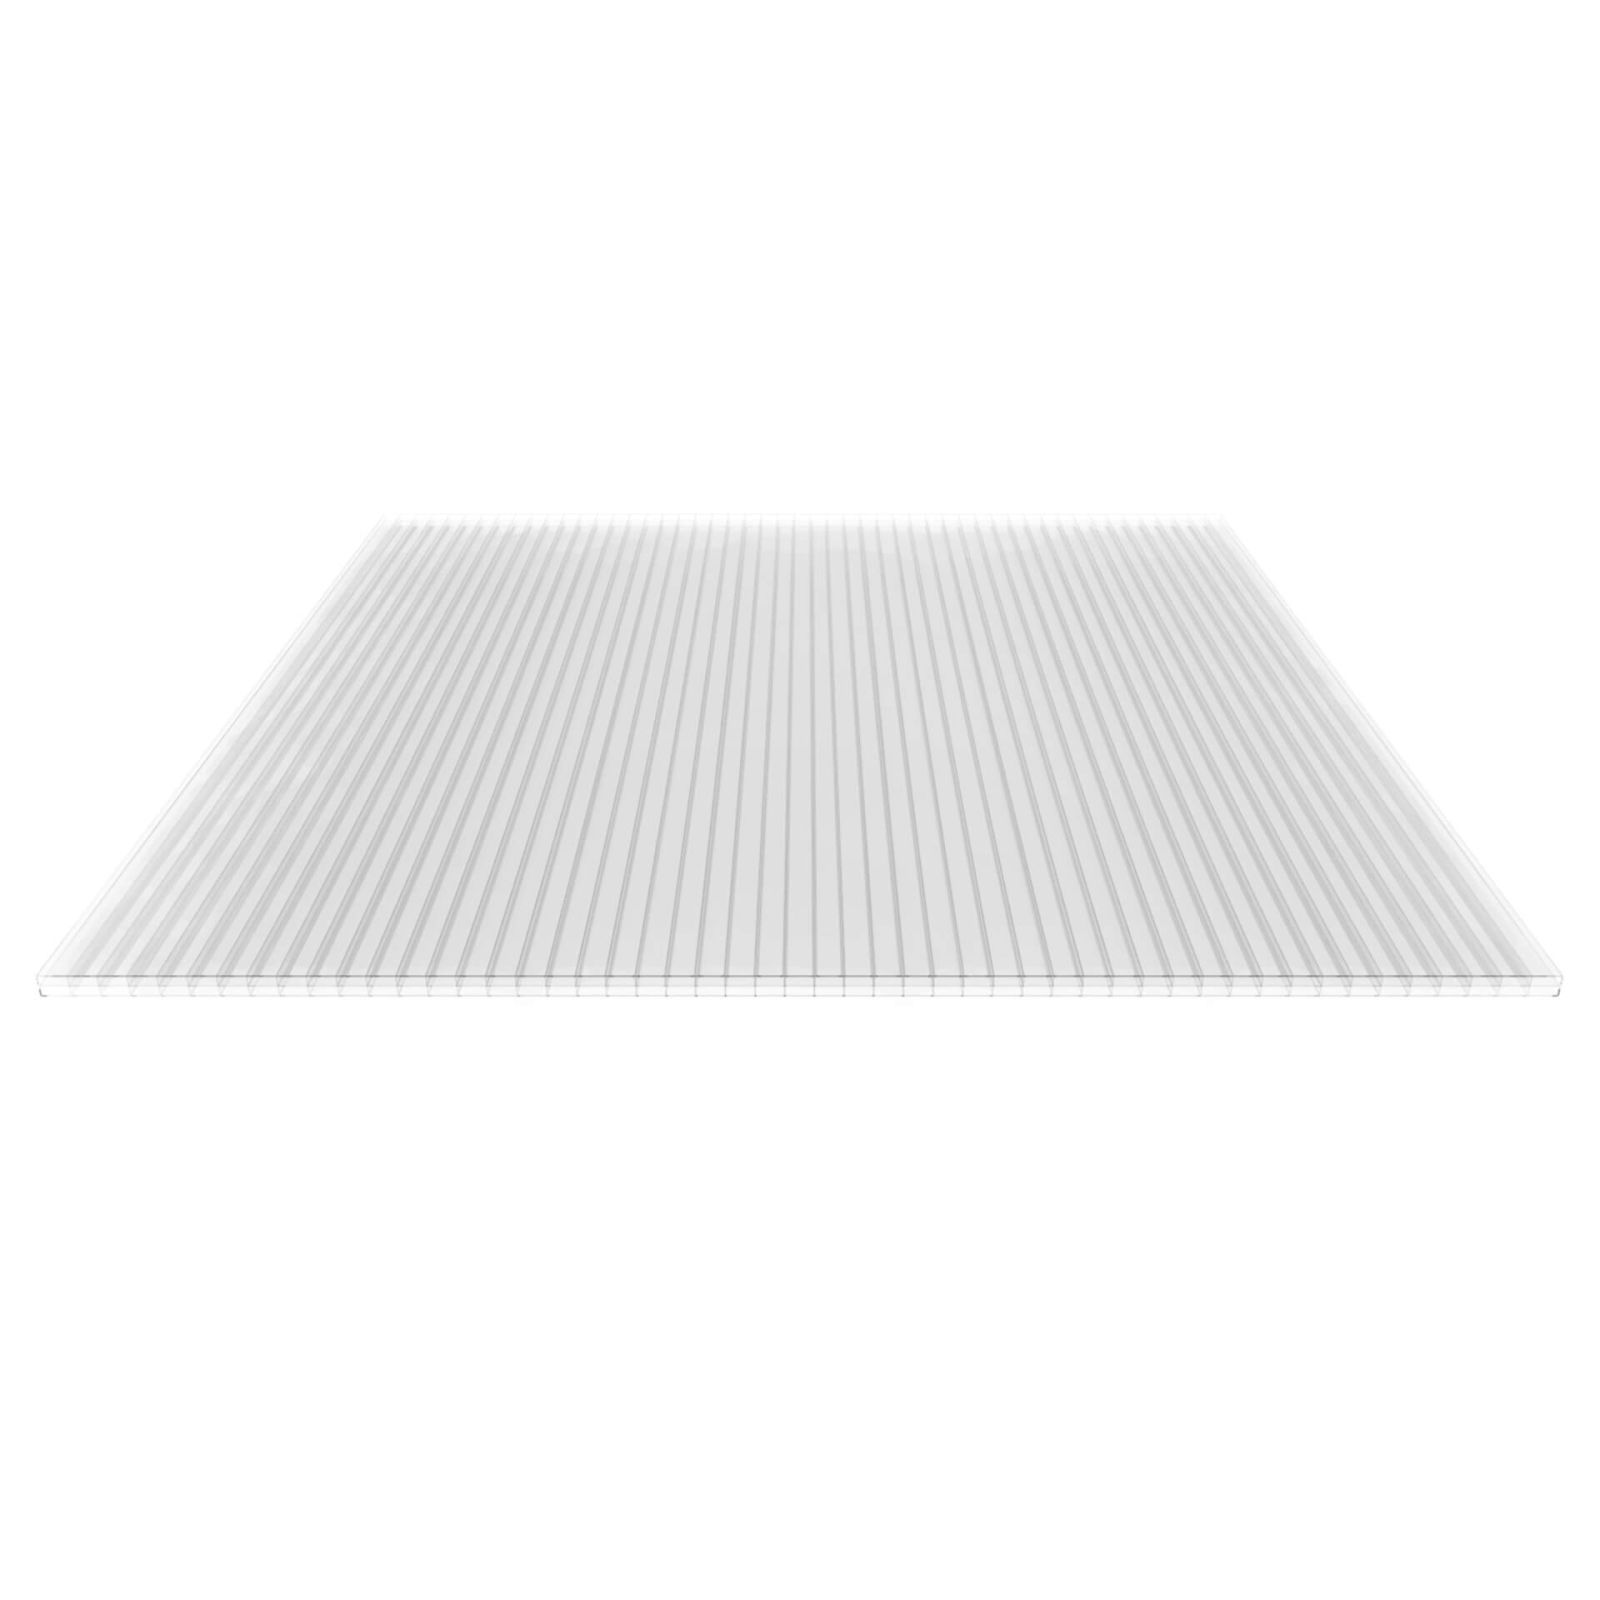 Polycarbonat Stegplatte | 16 mm | Profil Zevener Sprosse | Sparpaket | Plattenbreite 980 mm | Klar | Breite 3,13 m | Länge 2,00 m #5